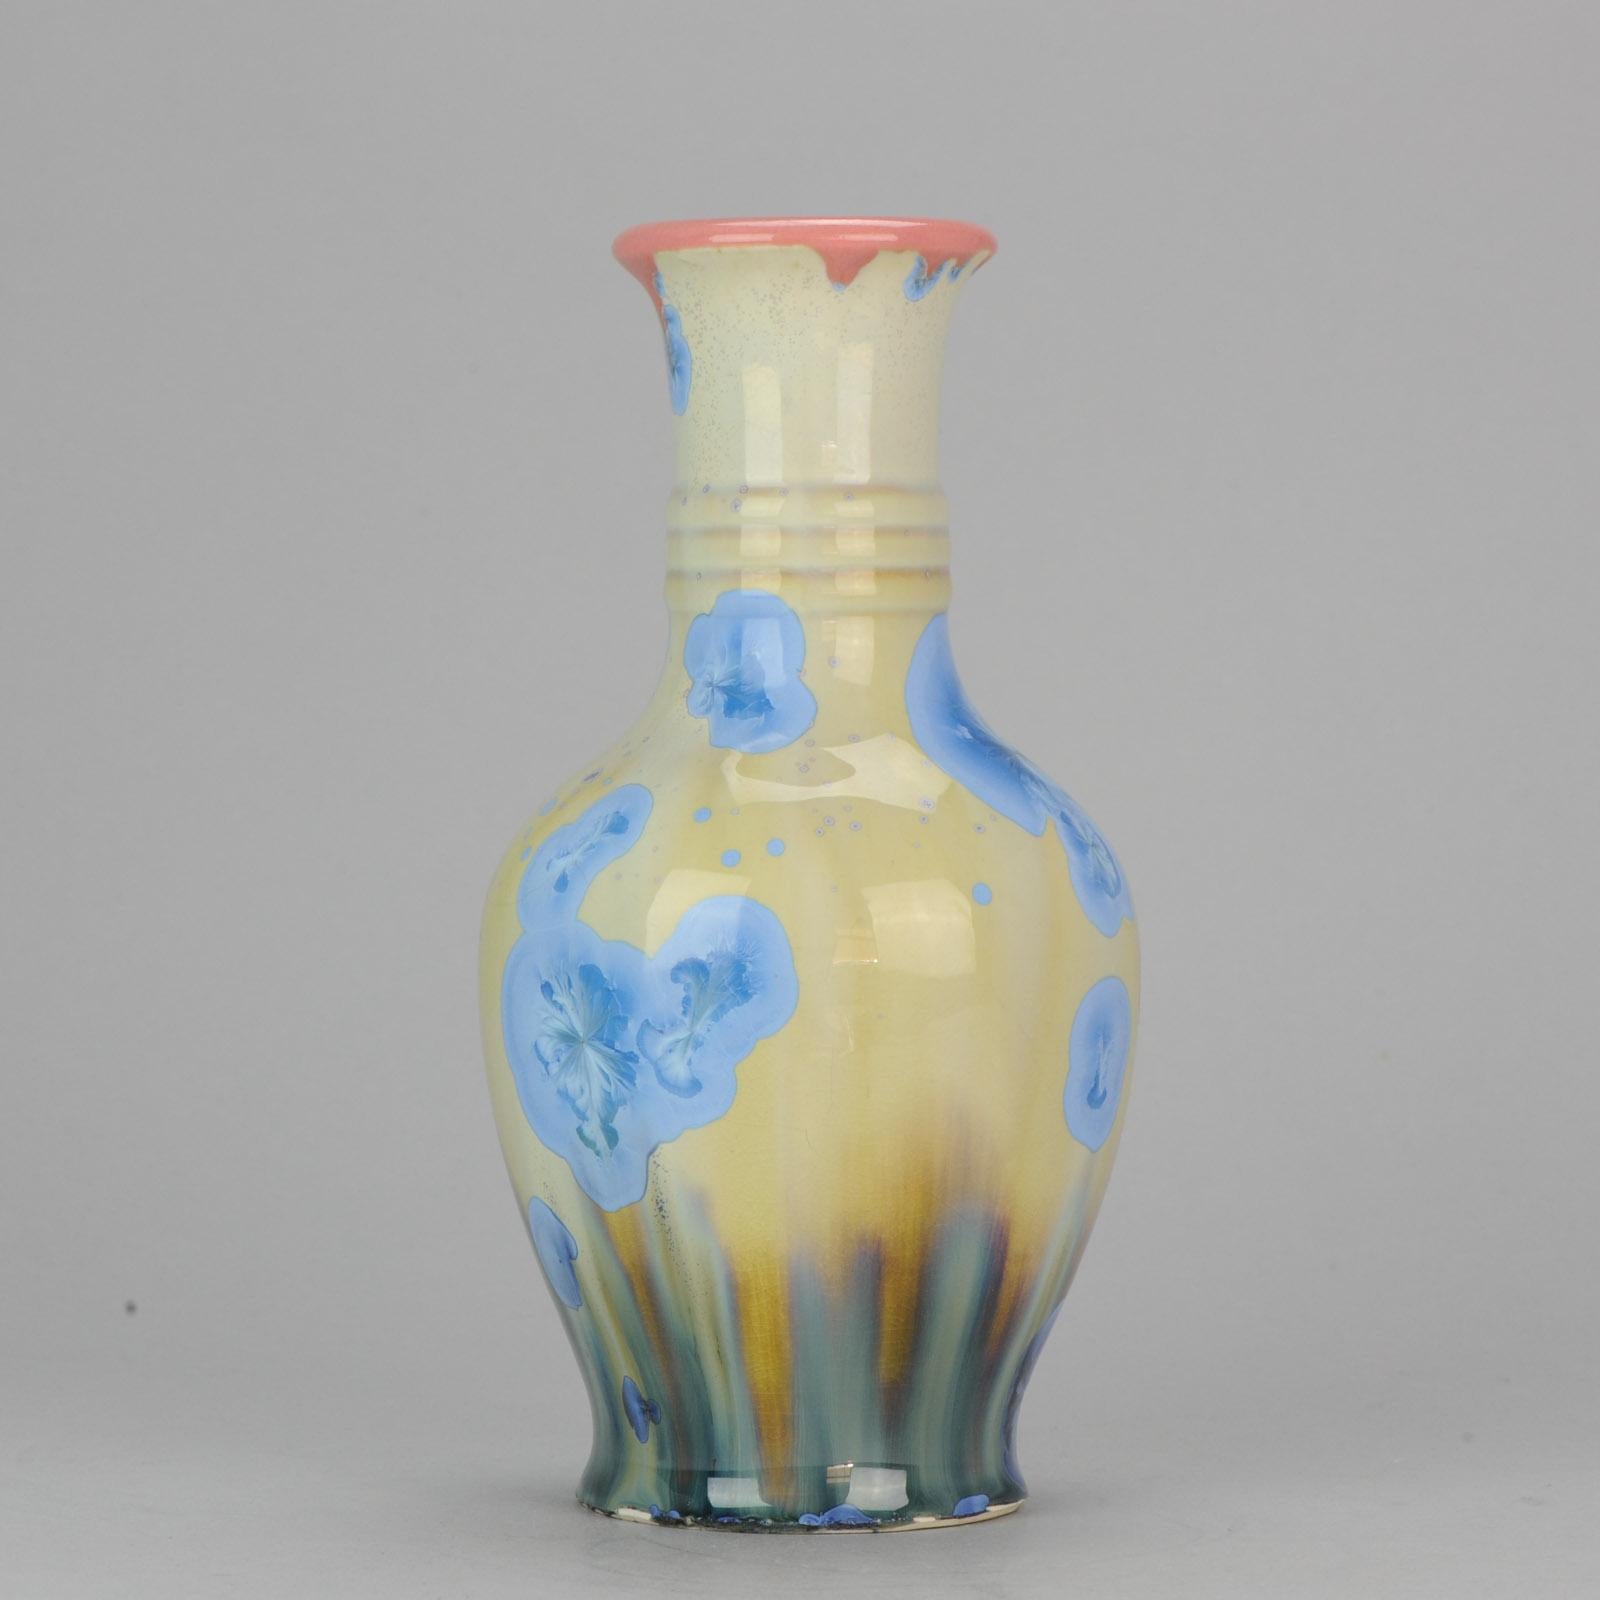 Shiwan 20th Century PRoC 1970-1980 Chinese Porcelain Vase Crystalline Glaz 1